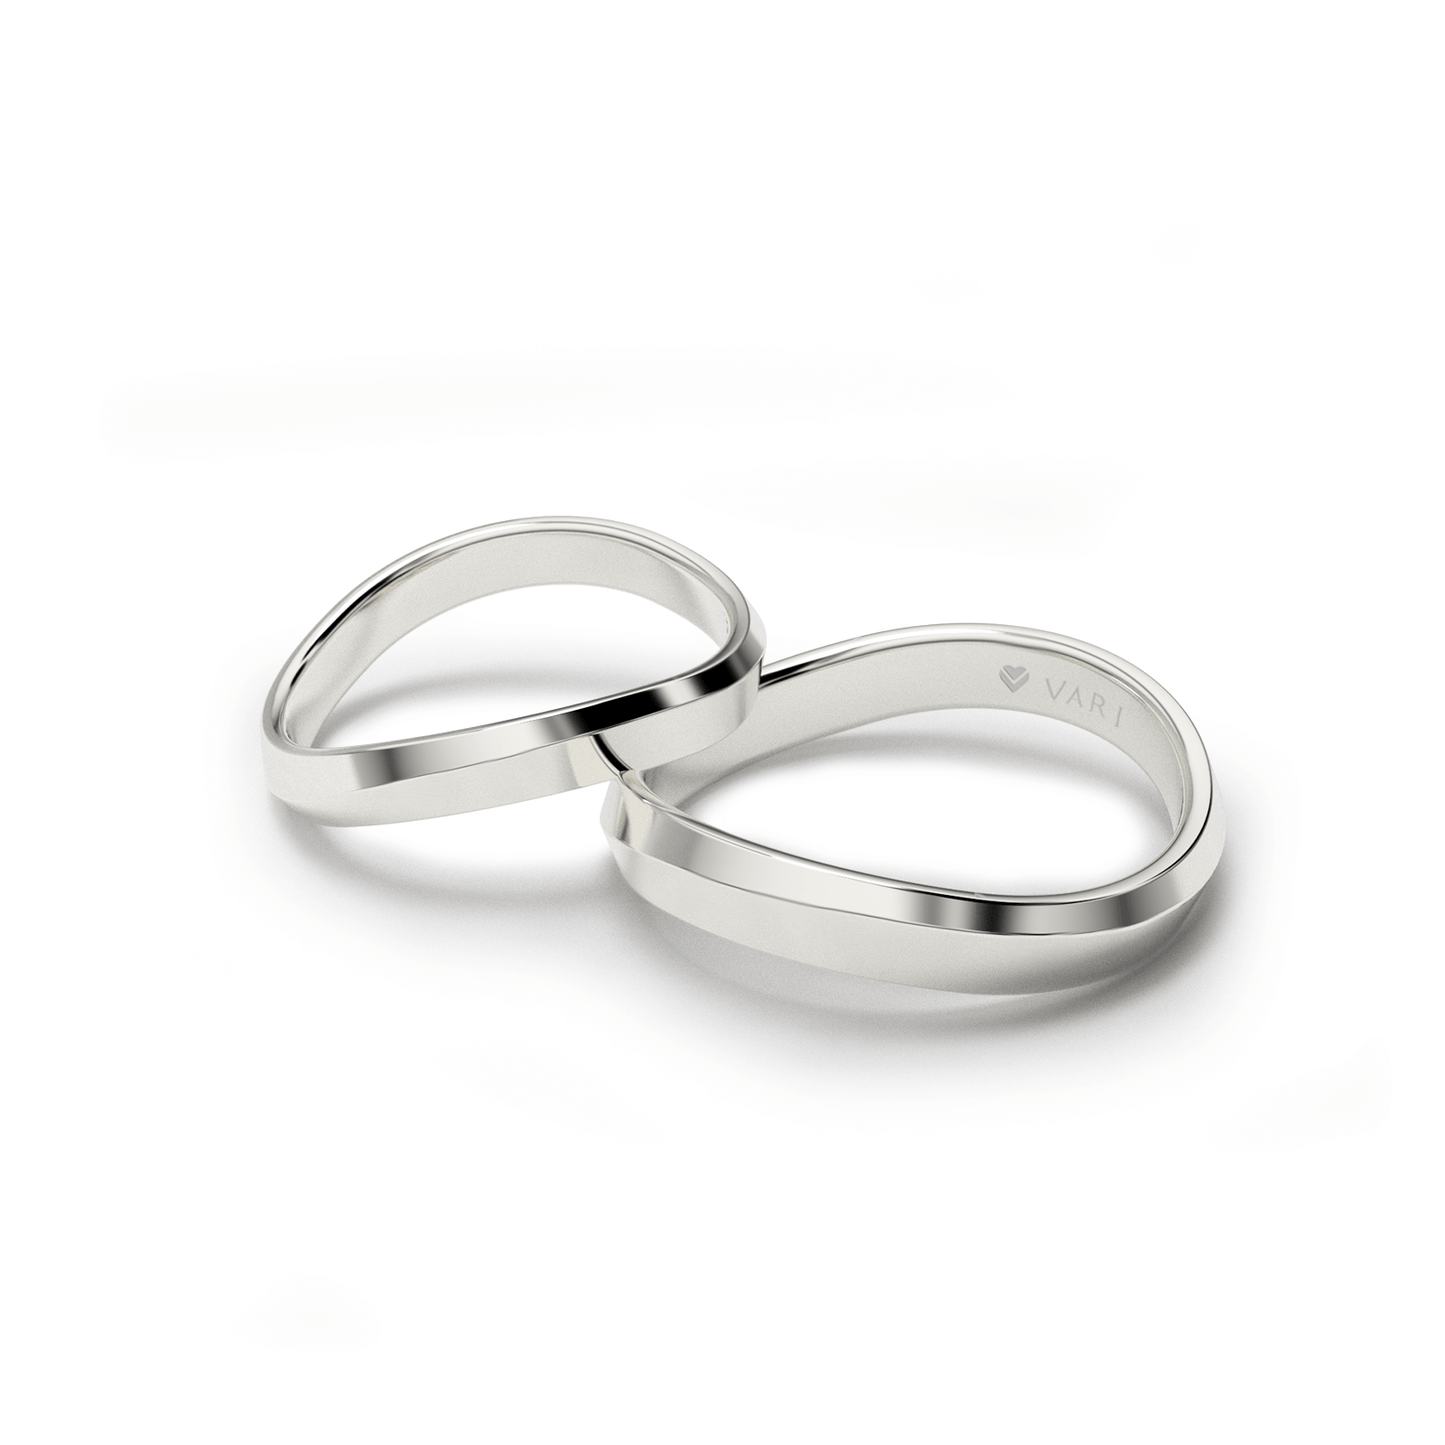 Forever rings - Wedding Rings